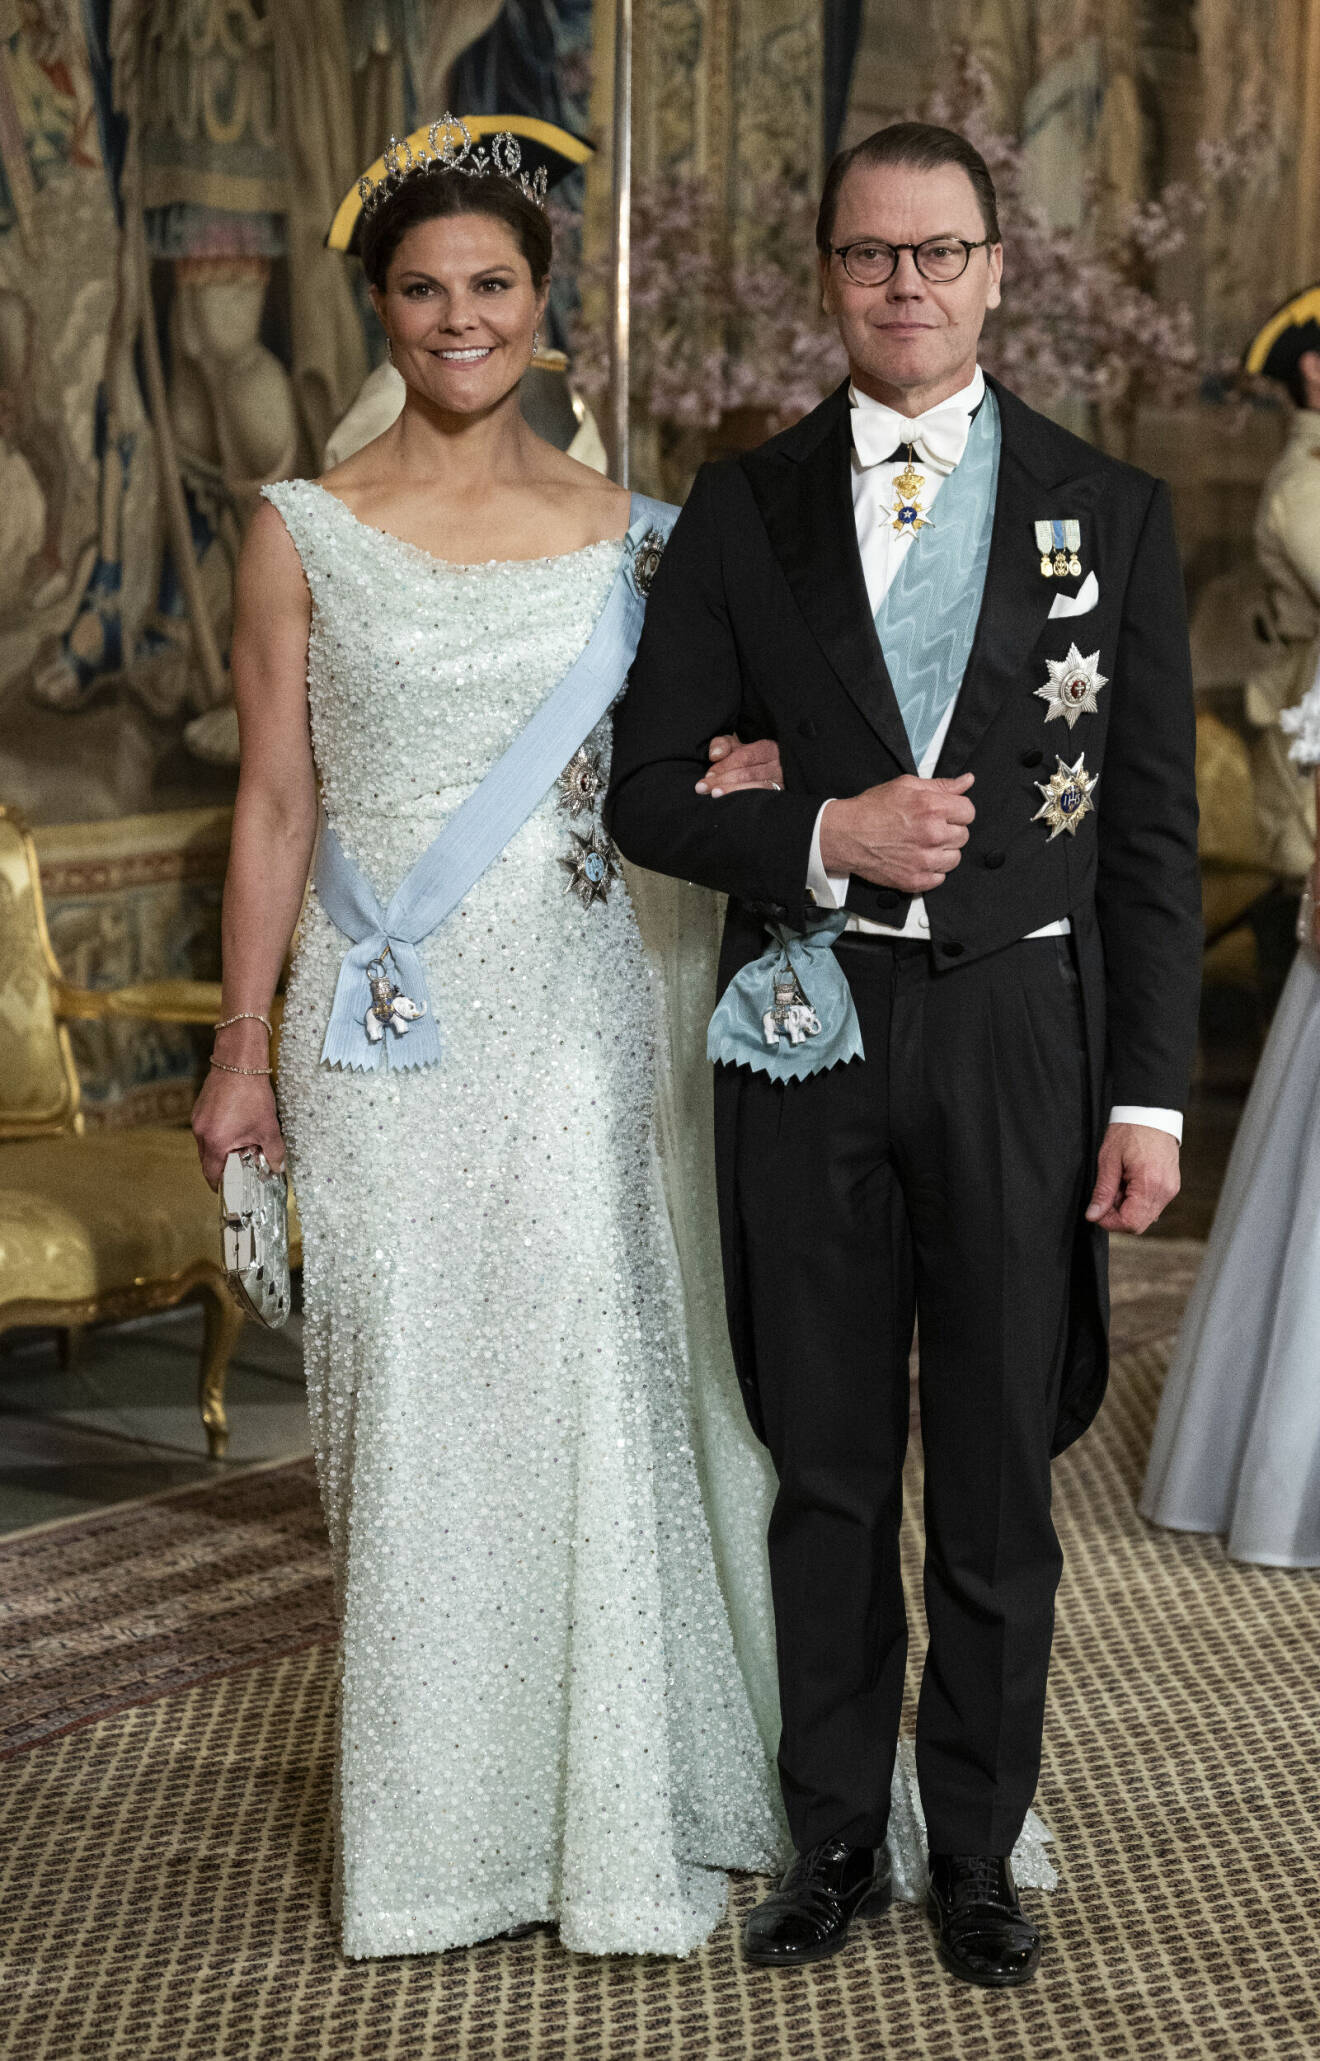 Galamiddagen på slottet – Victoria i paljettklänning av Christer Lindarw